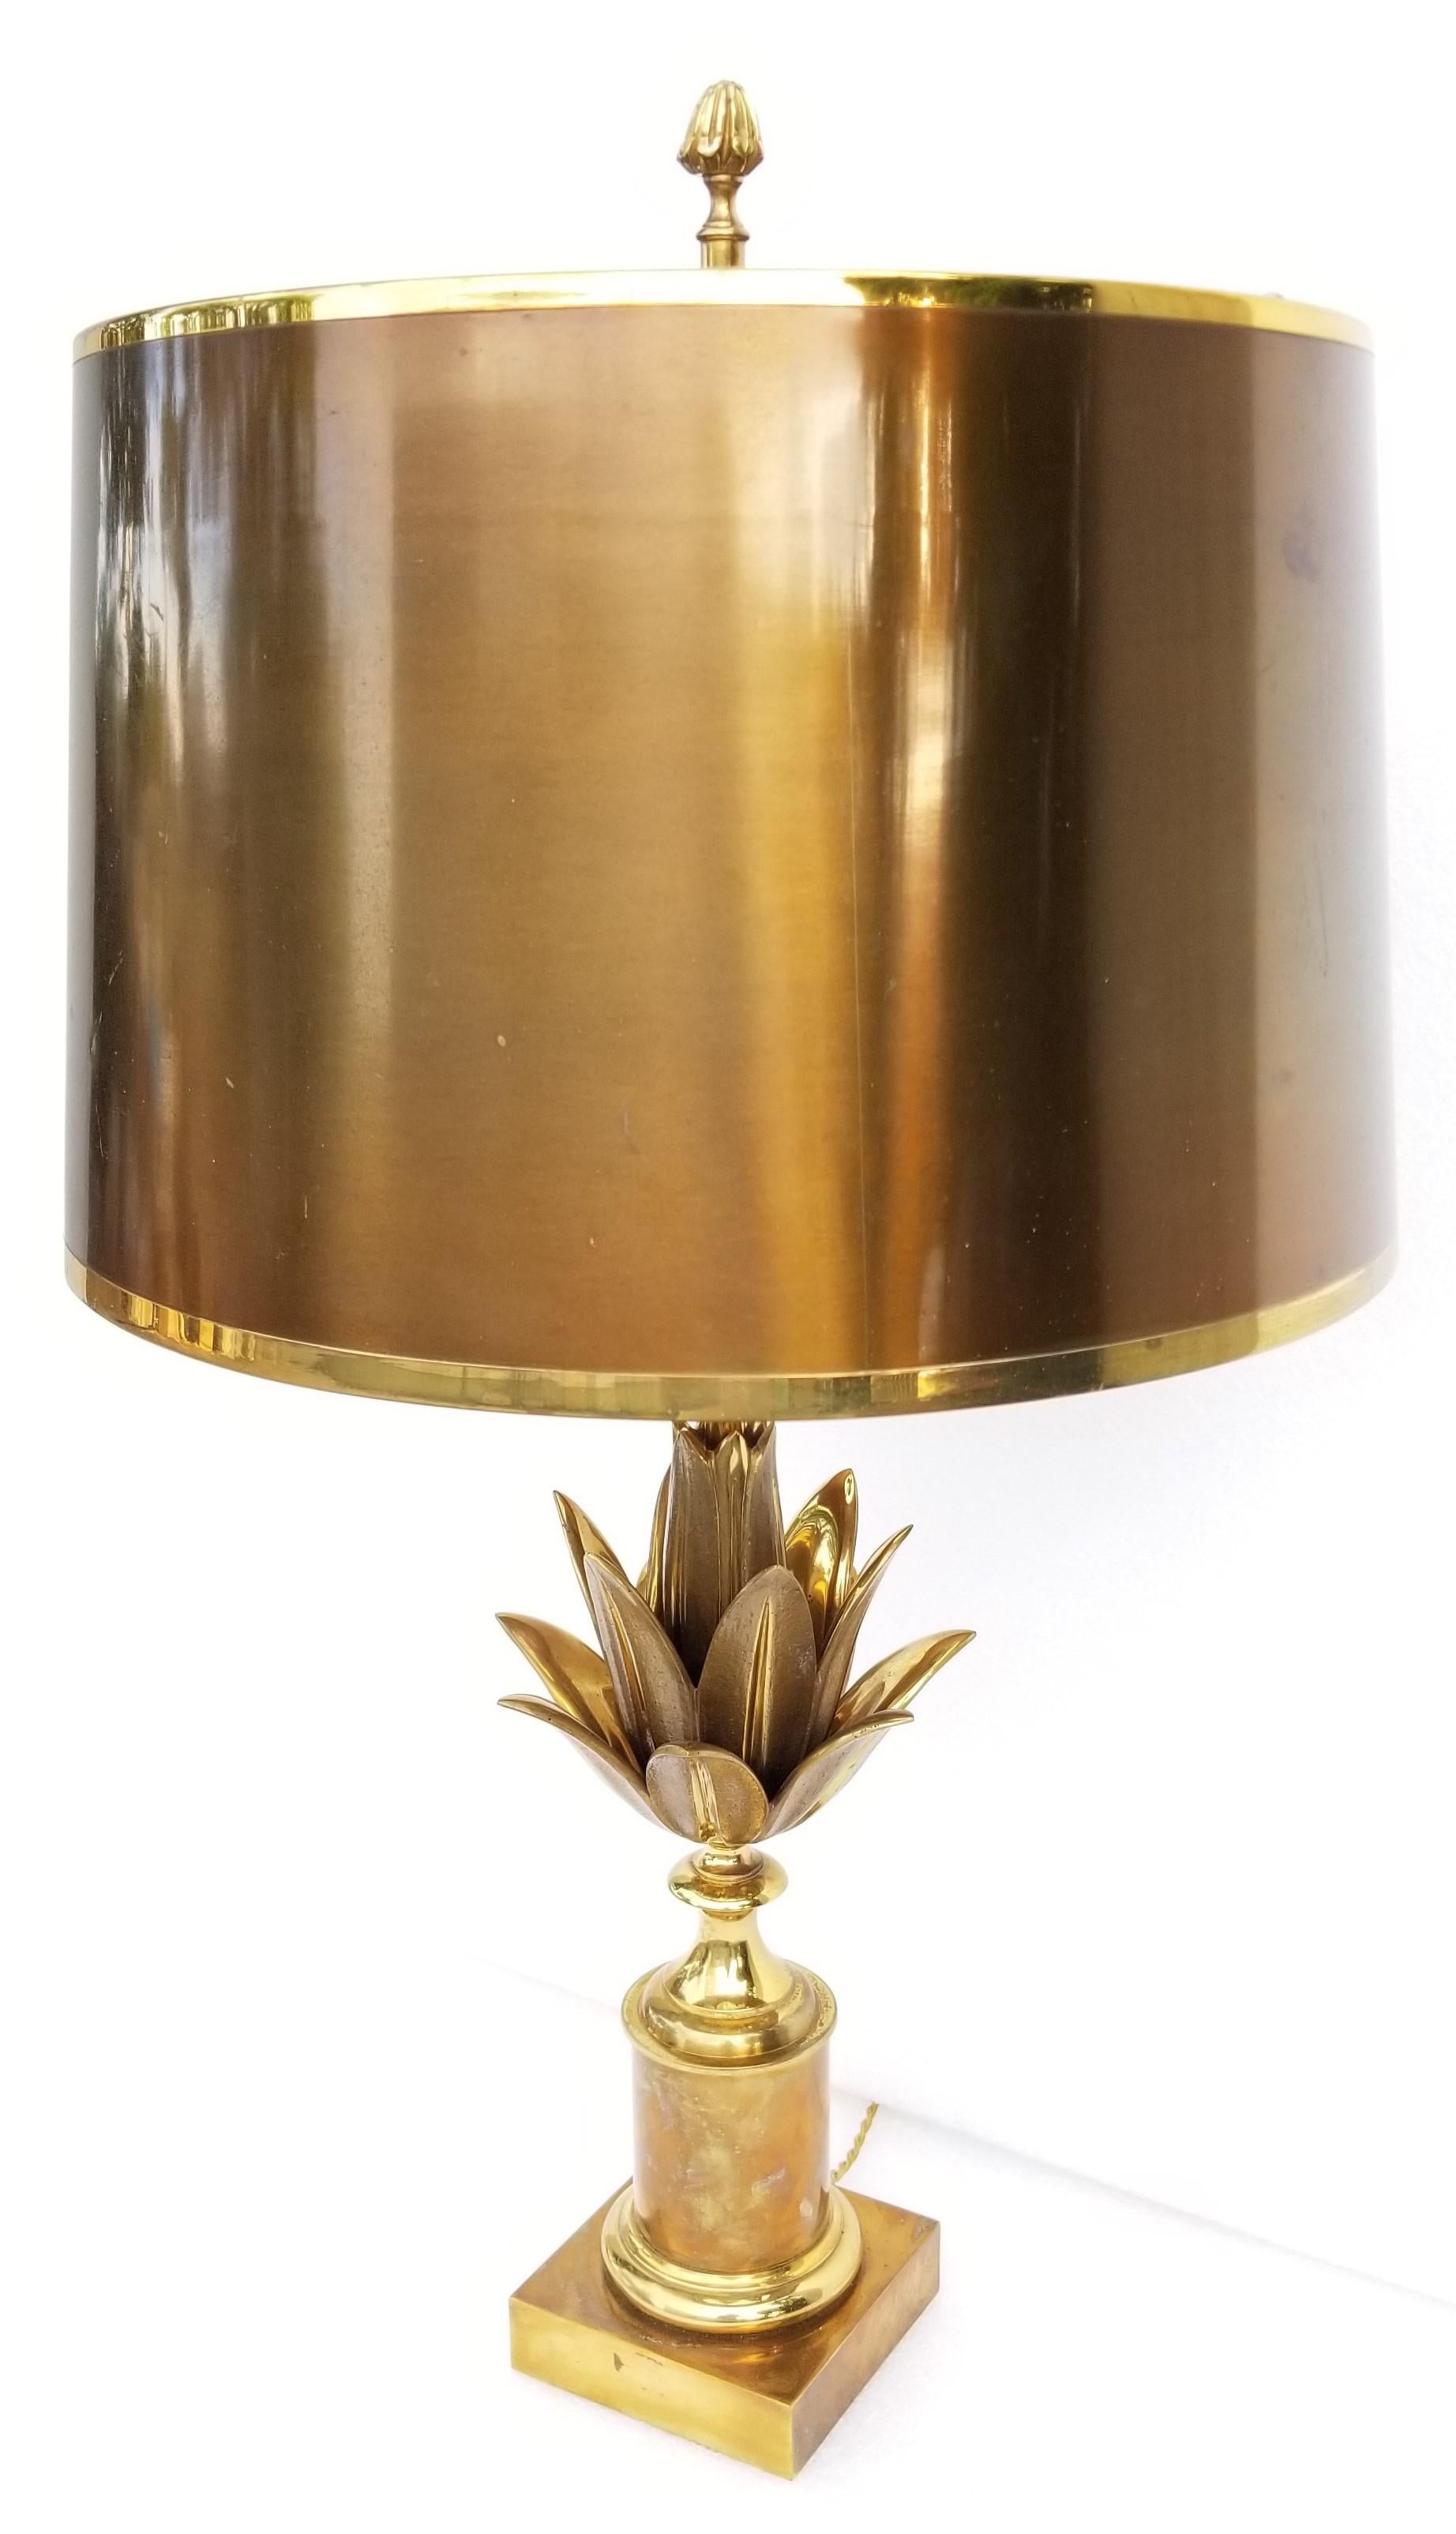 Lampe de table Maison Charles bronze, 2 patines bronze. Modèle 